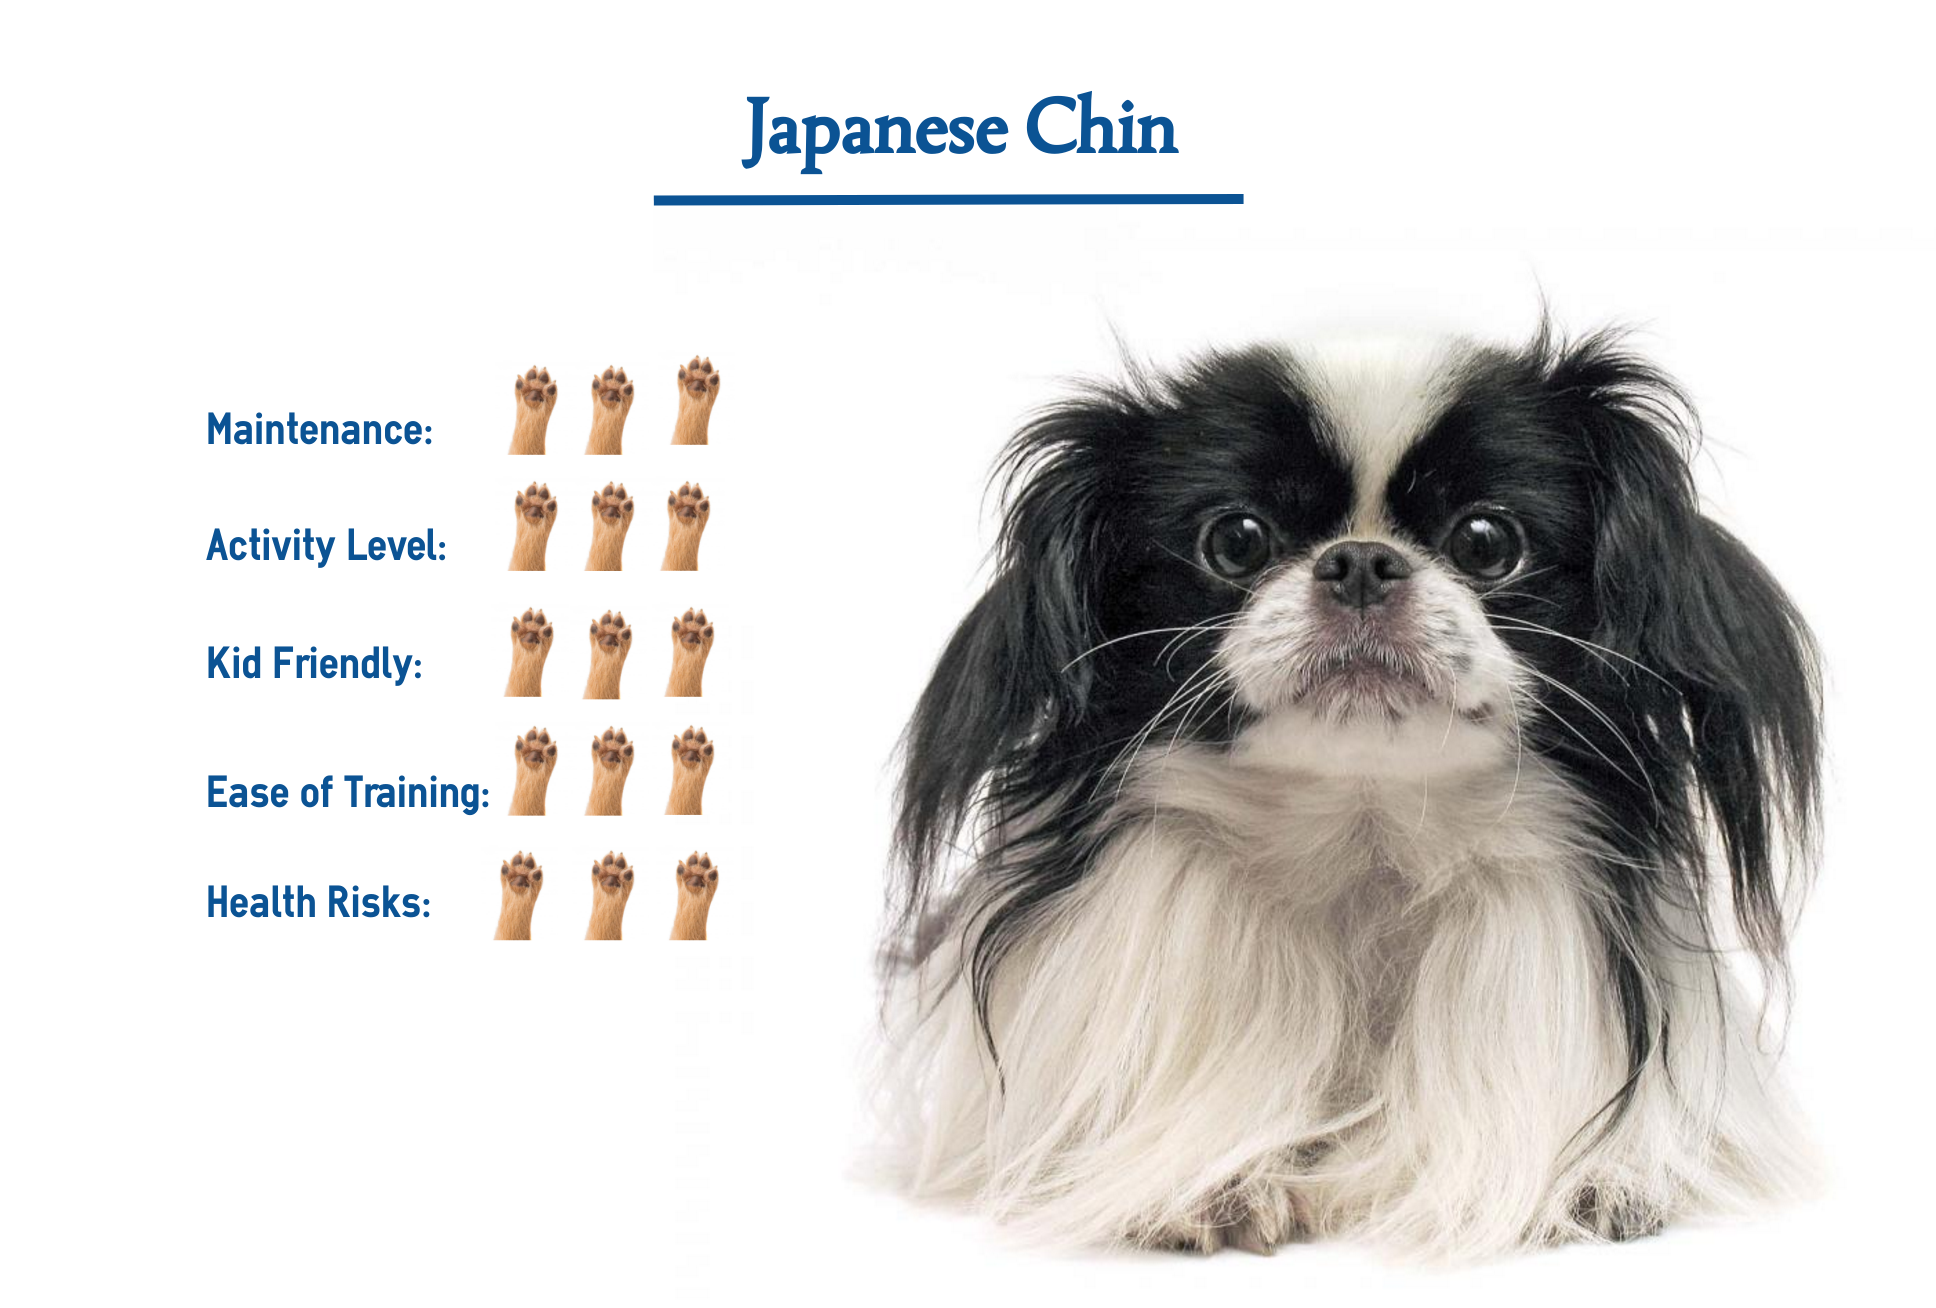 a japanese chin dog